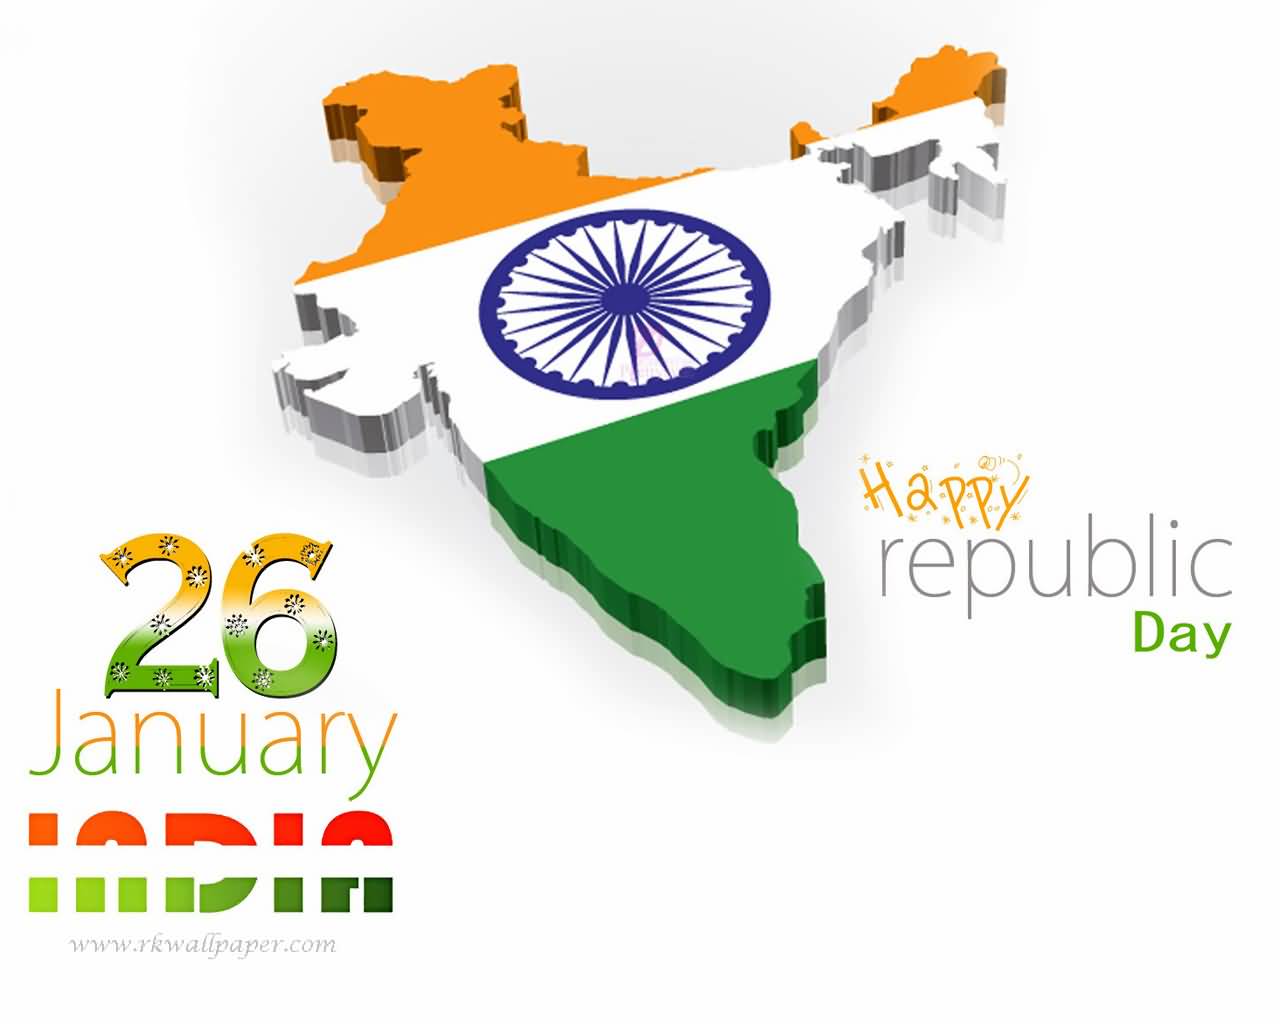 Happy Republic Day 26 January India